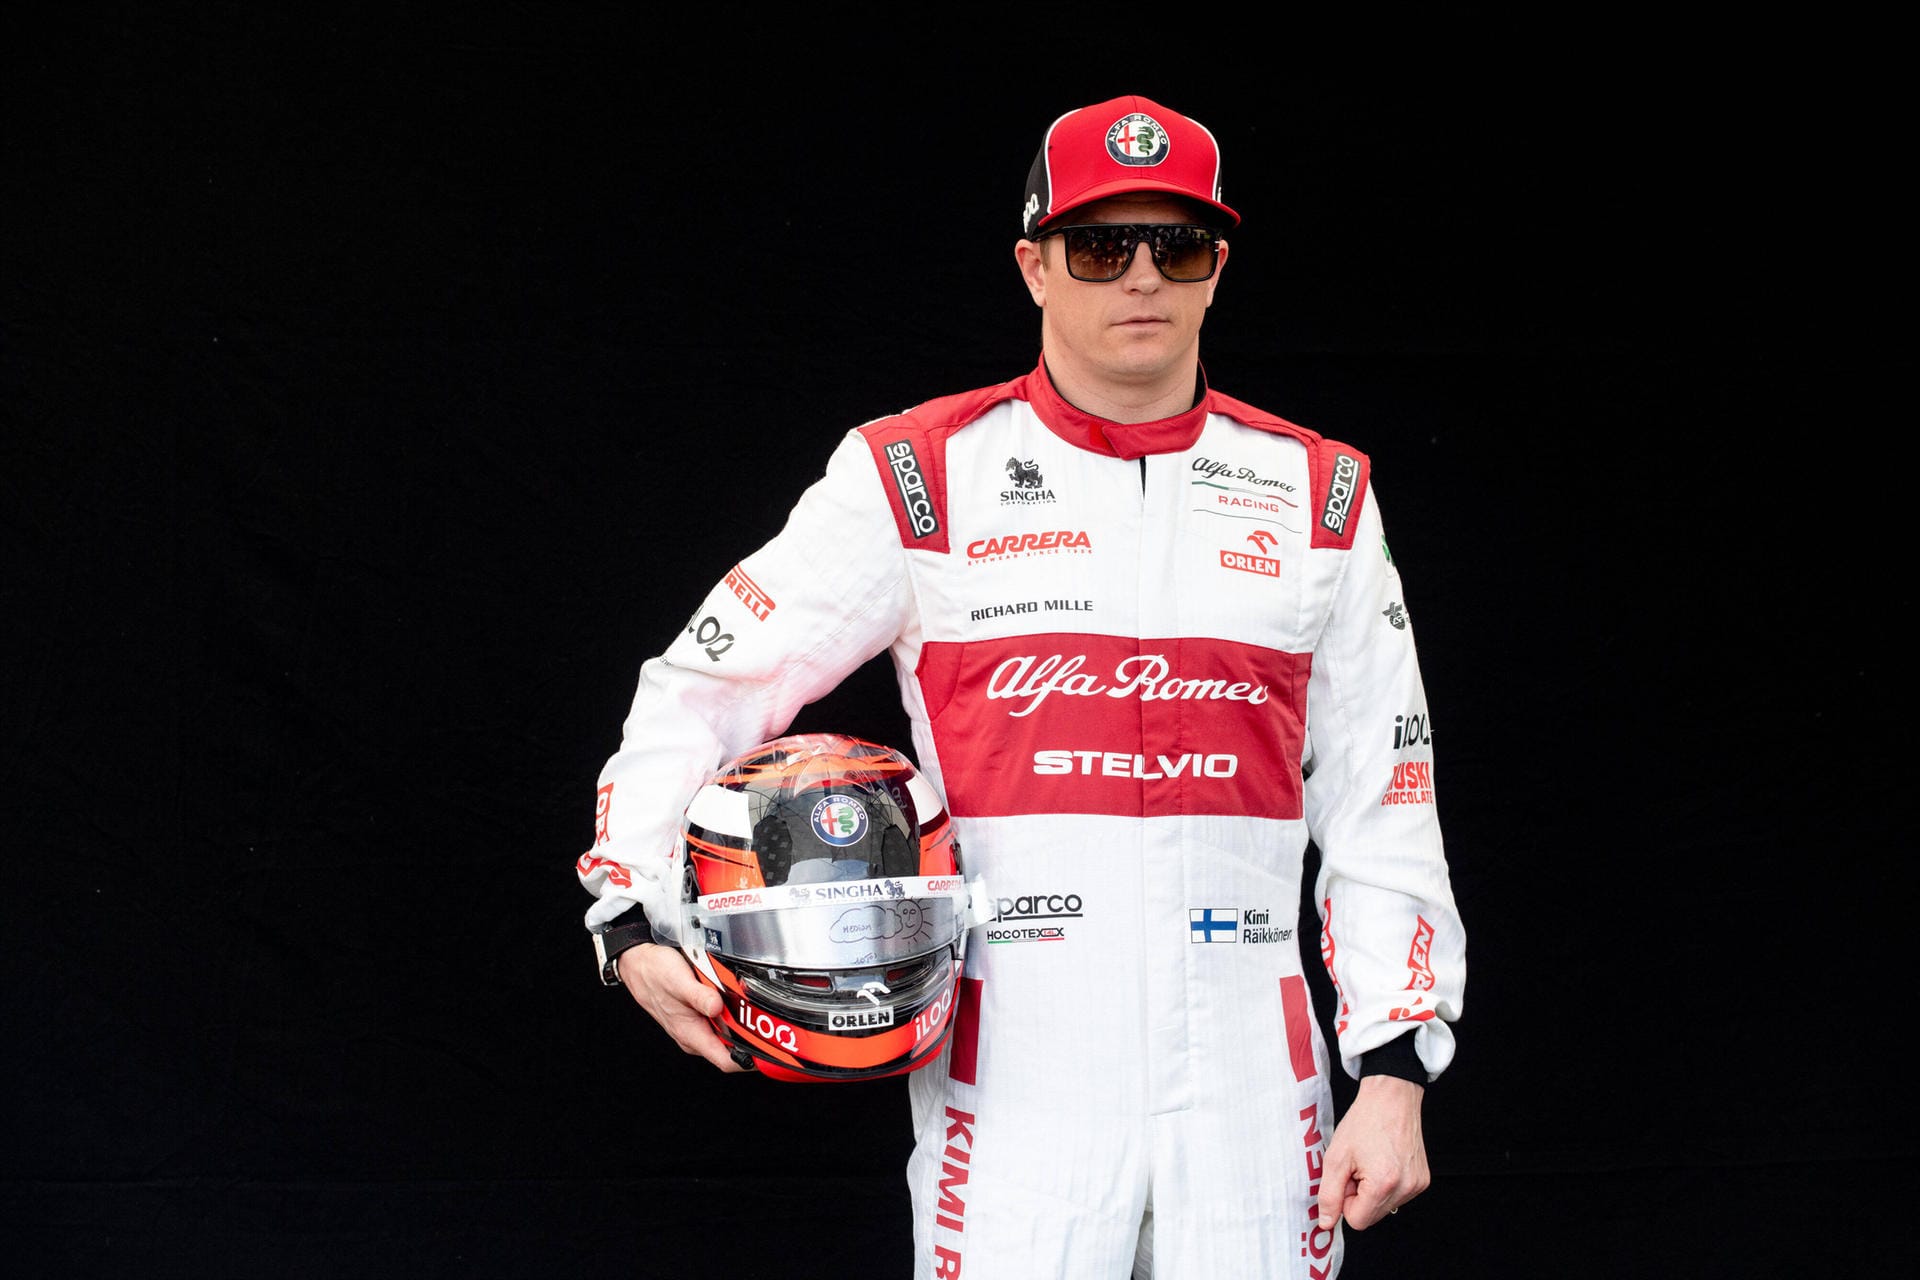 Kimi Räikkönen (Alfa Romeo): Auch mit 41 Jahren hat der Weltmeister von 2007 immer noch den Speed, mit den 20 Jahre jüngeren Kollegen mitzuhalten. Zwar schaffte es der Finne nur ganze zwei Mal in die Punkte und belegte am Ende WM-Platz 16, gemessen an den Umständen – ein schwacher Alfa Romeo, das Alter des Fahrers – aber noch immer respektabel. Note 4